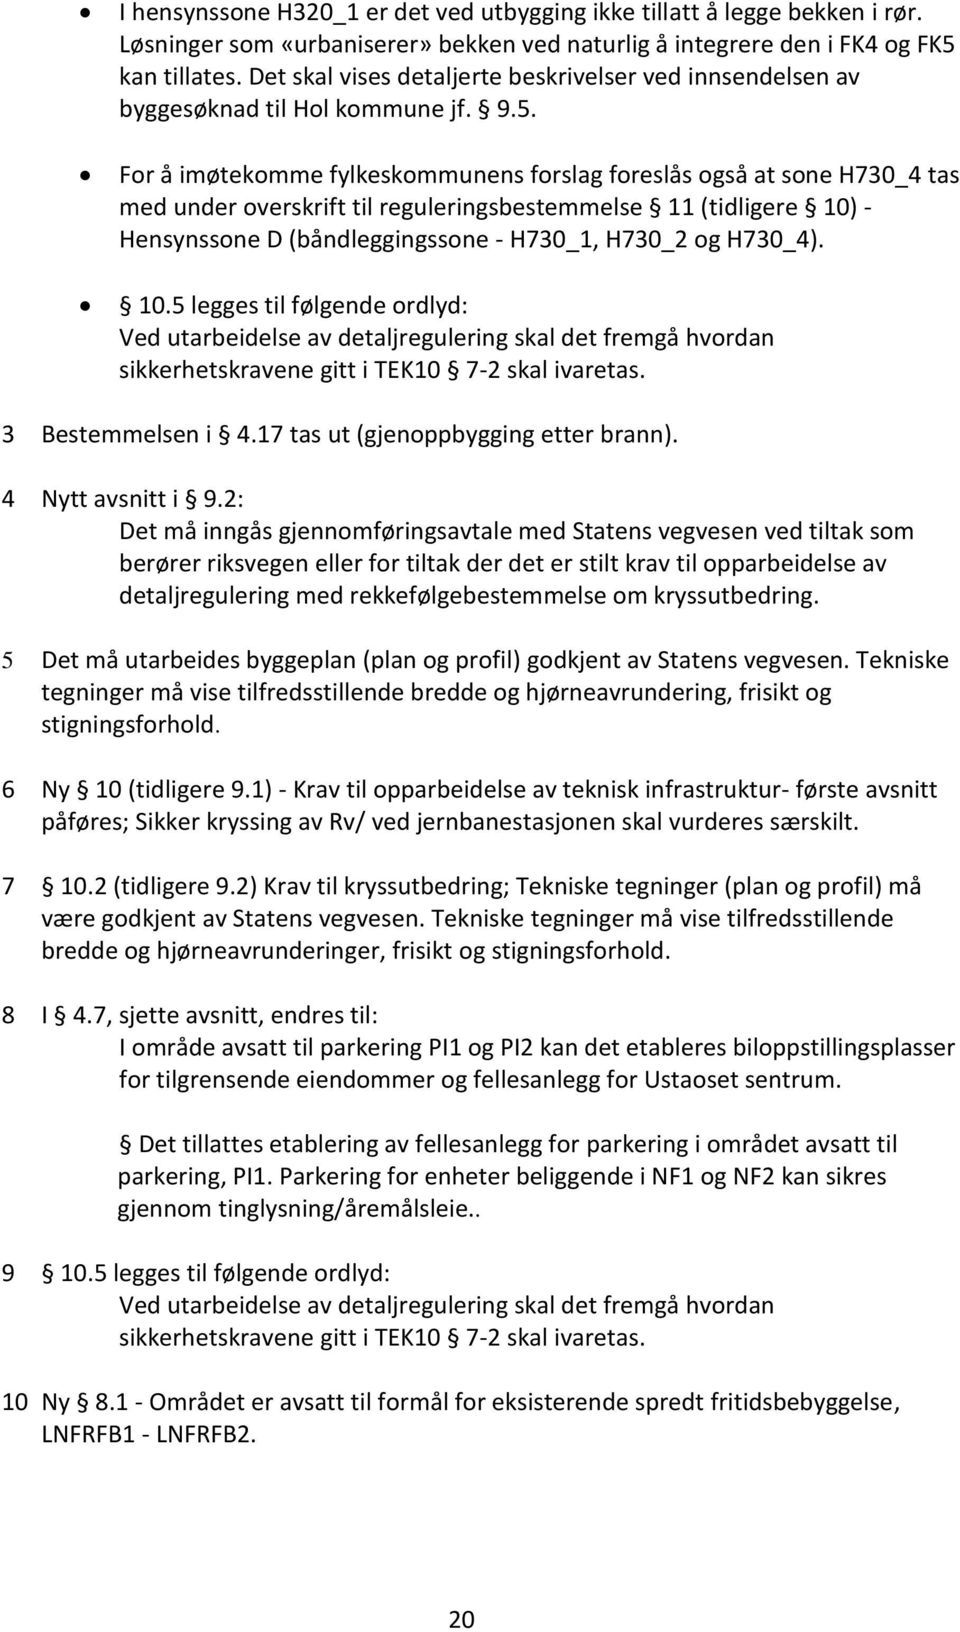 For å imøtekomme fylkeskommunens forslag foreslås også at sone H730_4 tas med under overskrift til reguleringsbestemmelse 11 (tidligere 10) - Hensynssone D (båndleggingssone - H730_1, H730_2 og